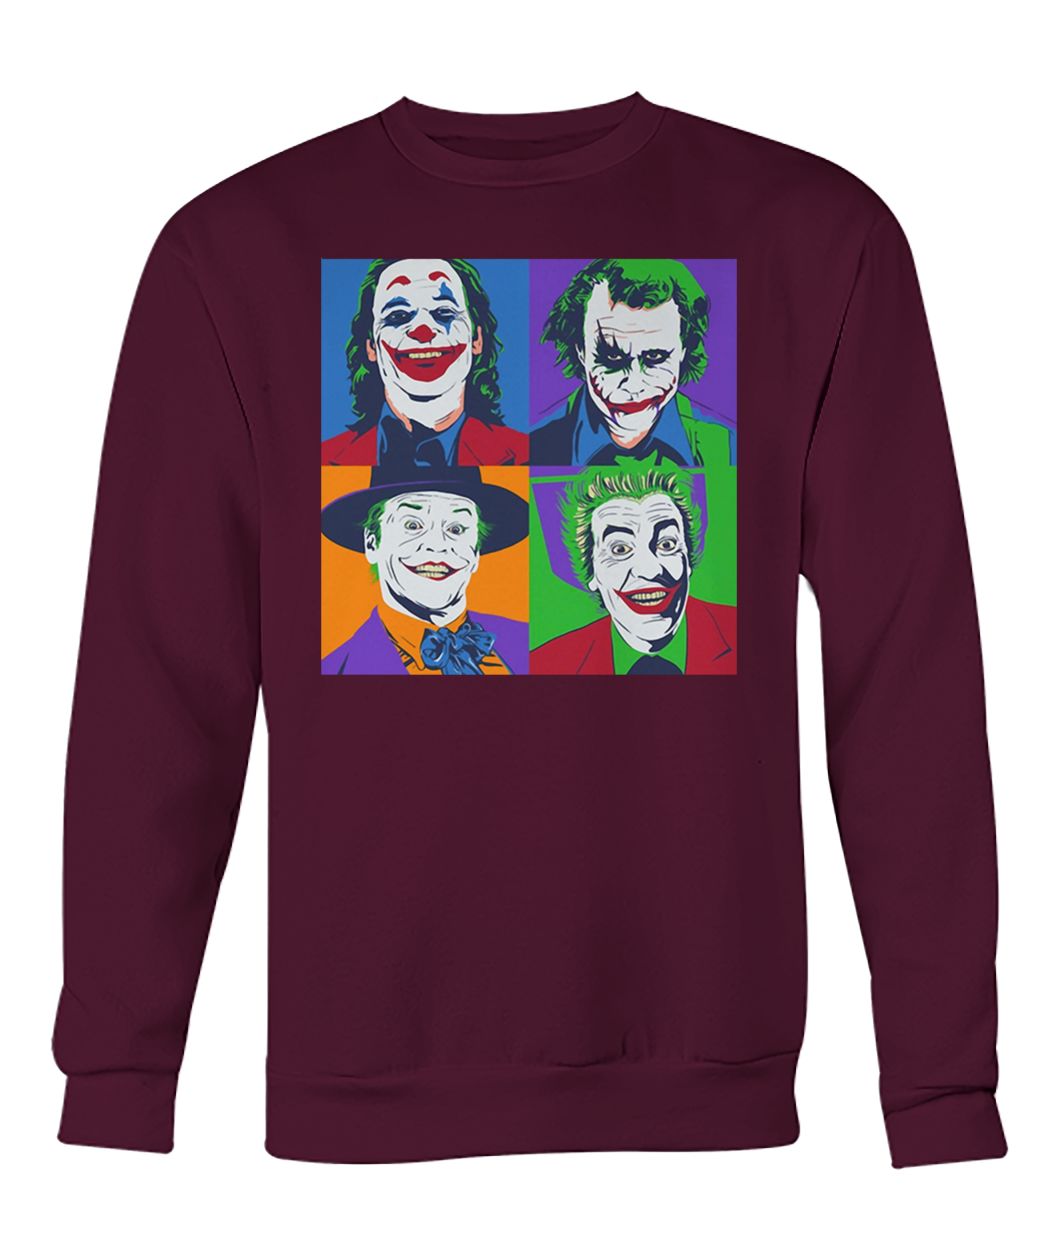 Joker pop art crew neck sweatshirt